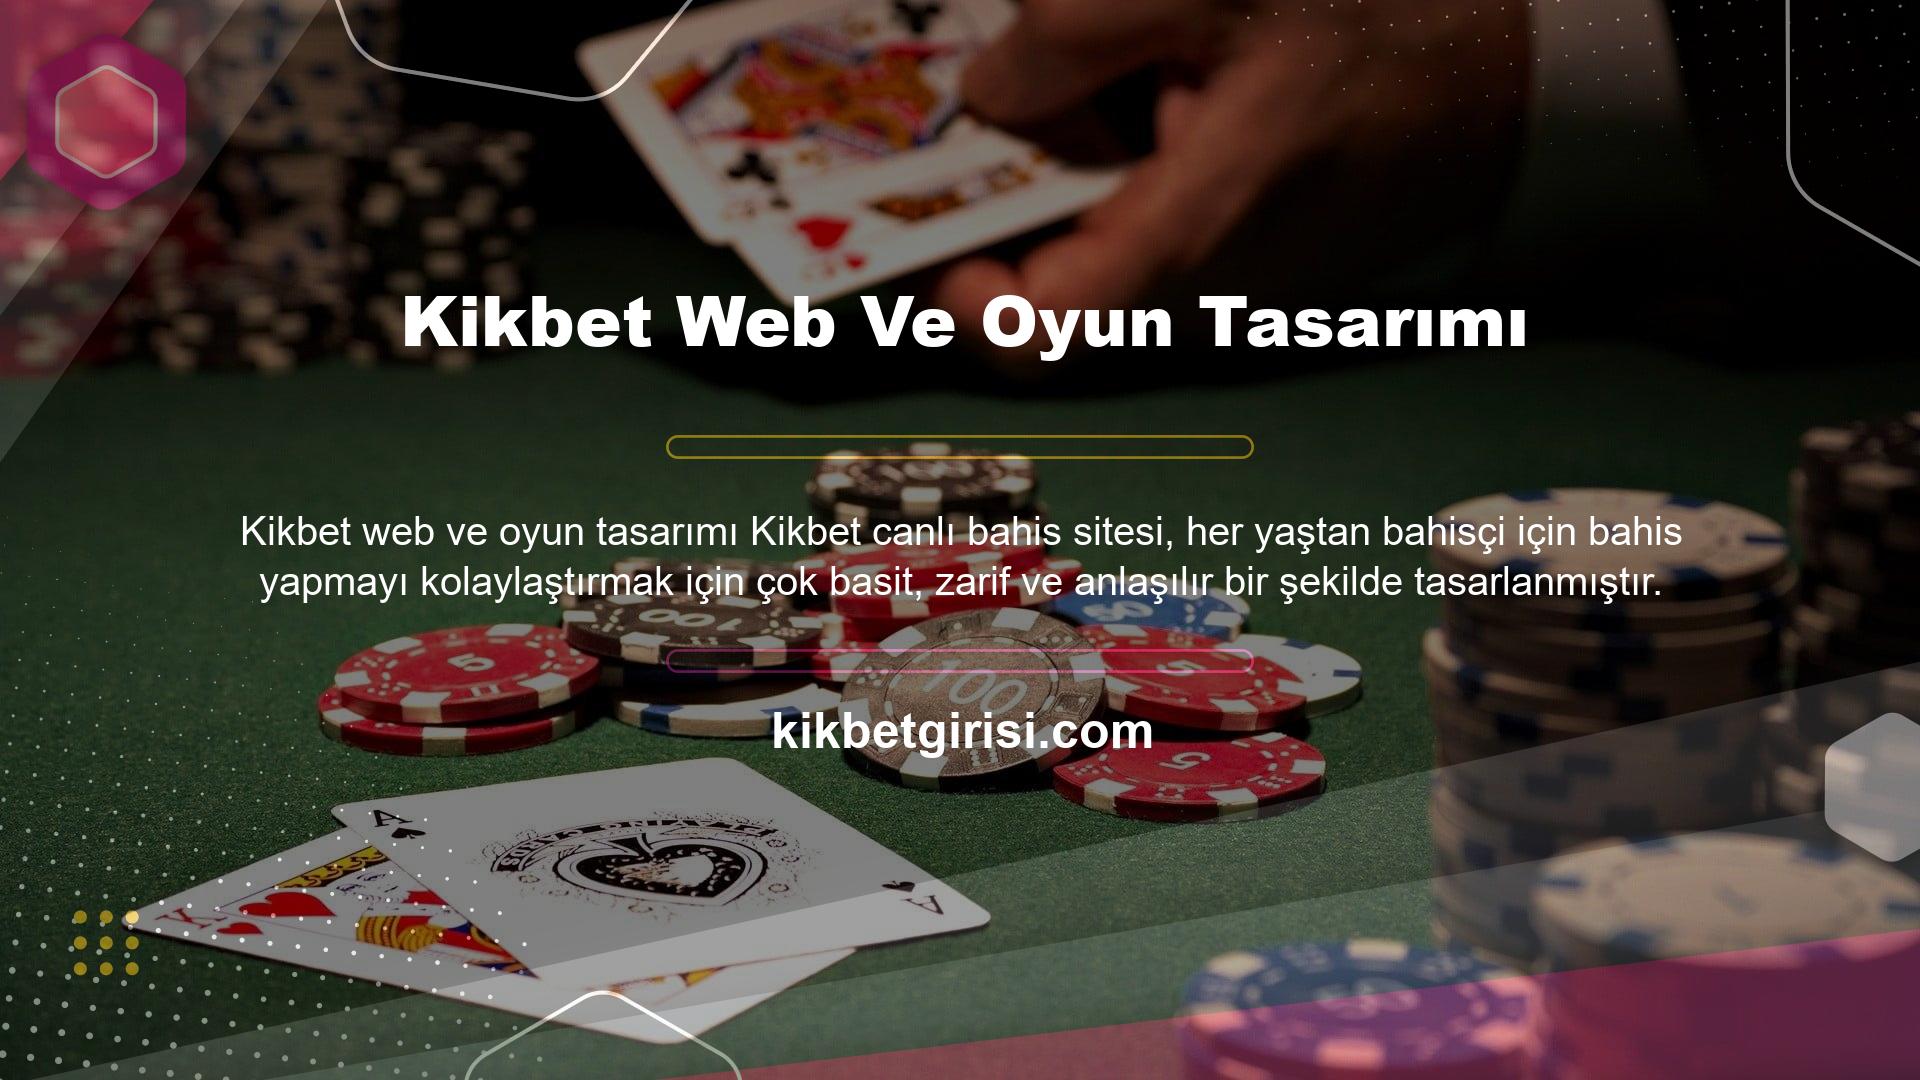 Ayrıca Kikbet web sitesinin yönetim ekibi oyun alanında donanımlı ve deneyimlidir